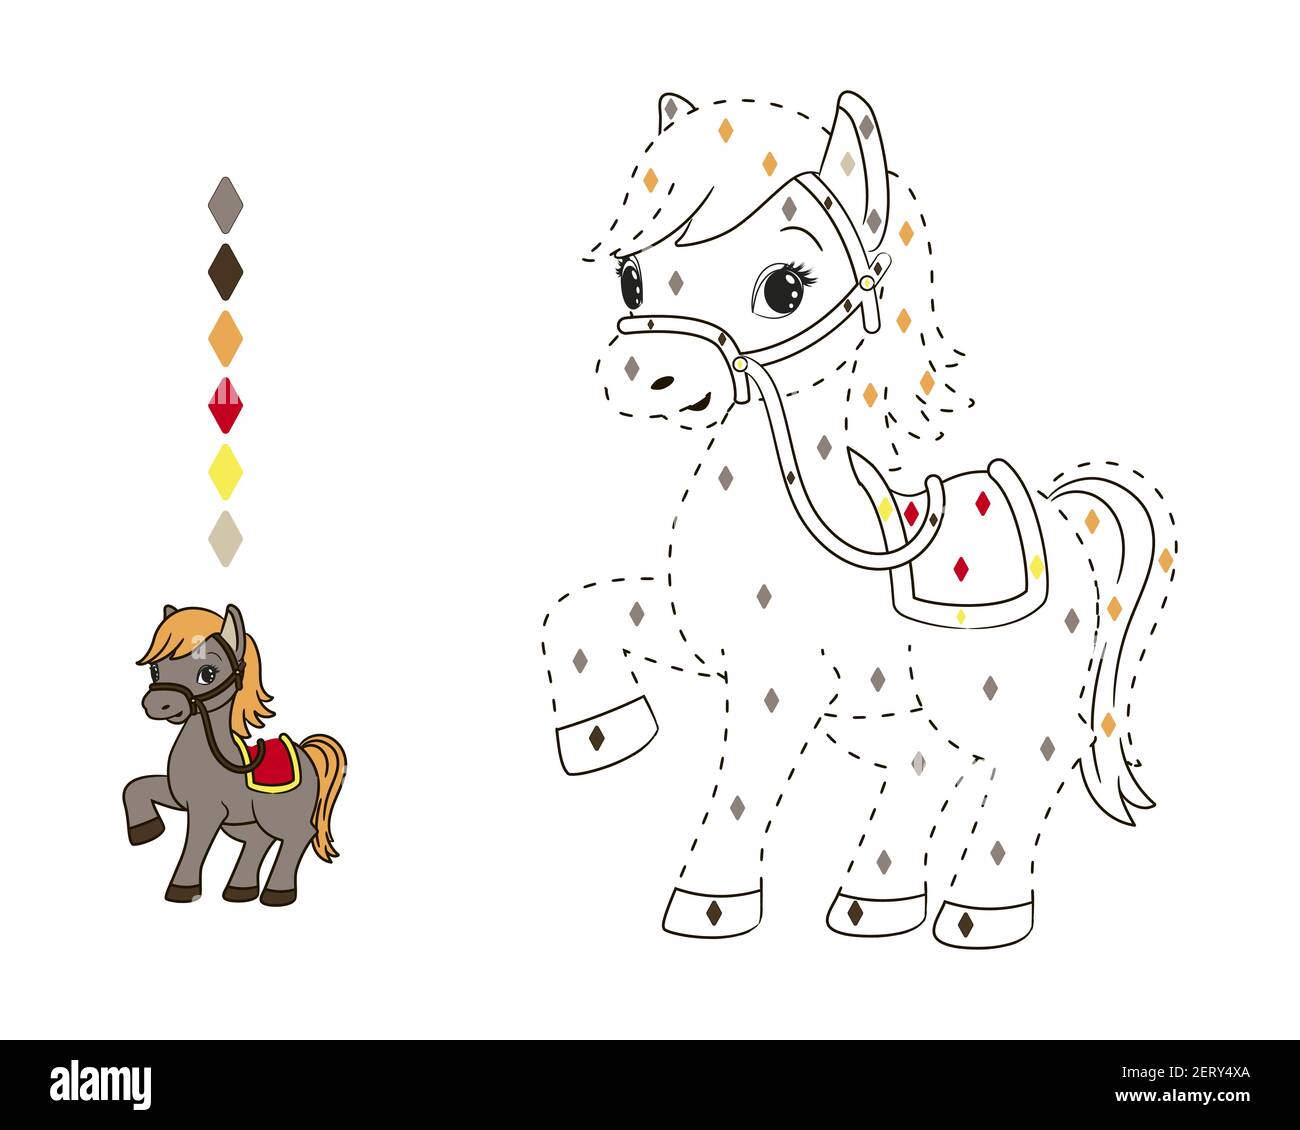 Coloriage par des chiffres pour les enfants, petit cheval avec orange mane.Vector illustration dans le style de dessin animé, ligne pointillée Illustration de Vecteur